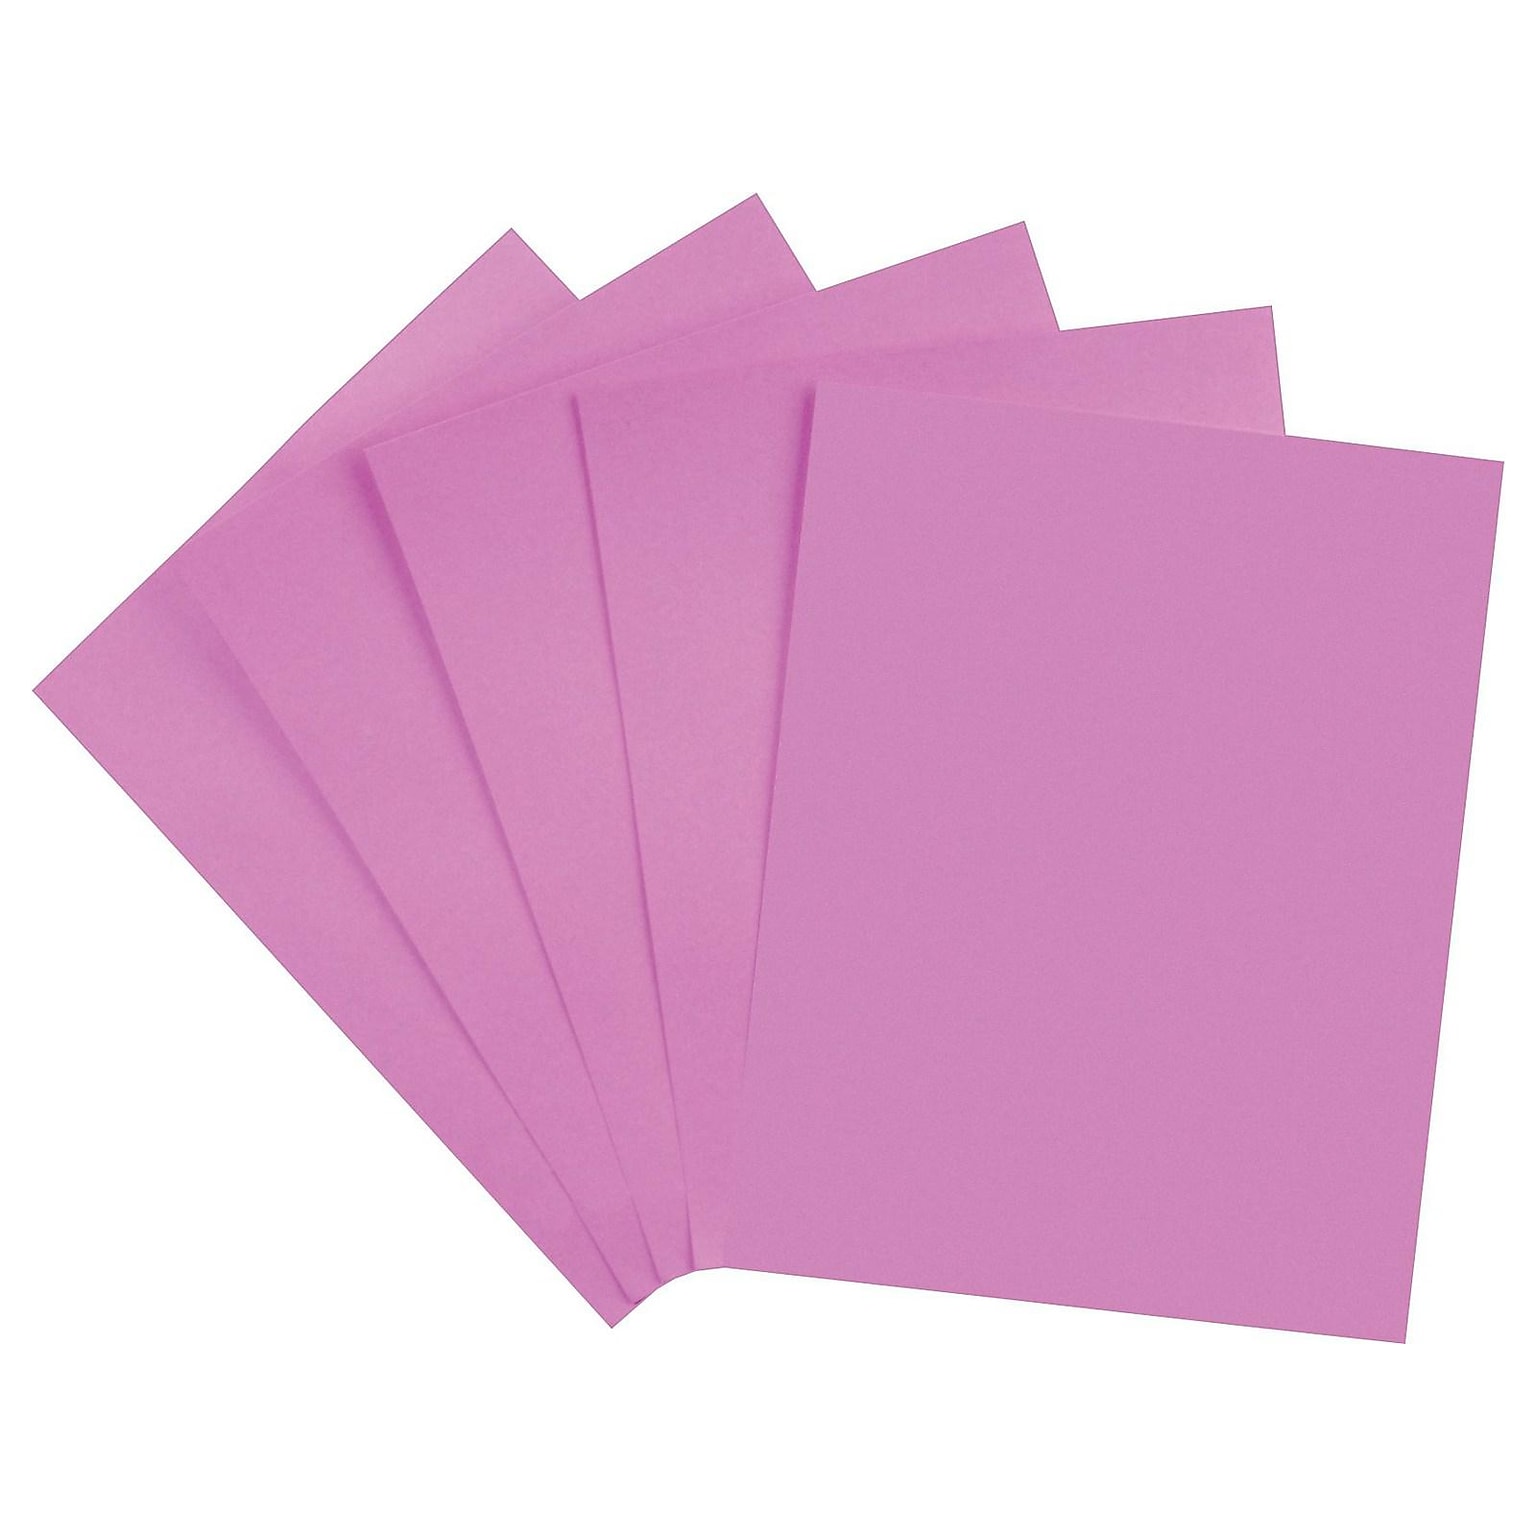 Staples Brights Multipurpose Colored Paper, 24 lb, 8.5 x 11, Purple, 500/Ream, 10 Reams/Carton (20110A)